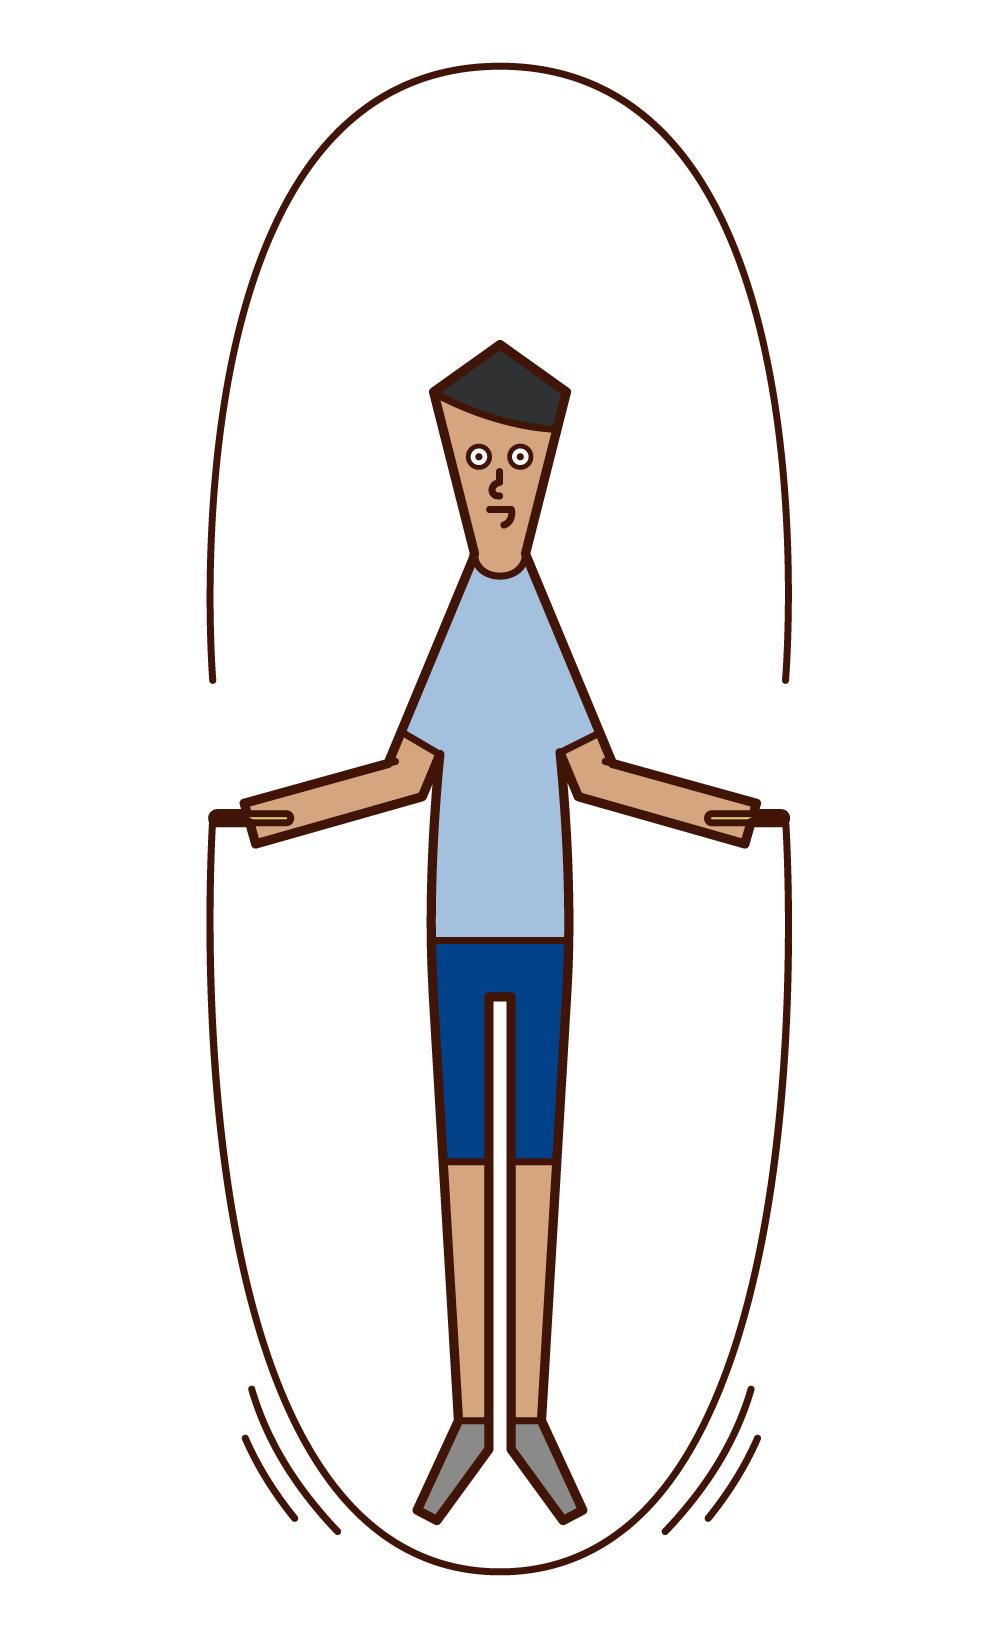 縄跳びをする人 男性 のイラスト フリーイラスト素材集 Kukukeke